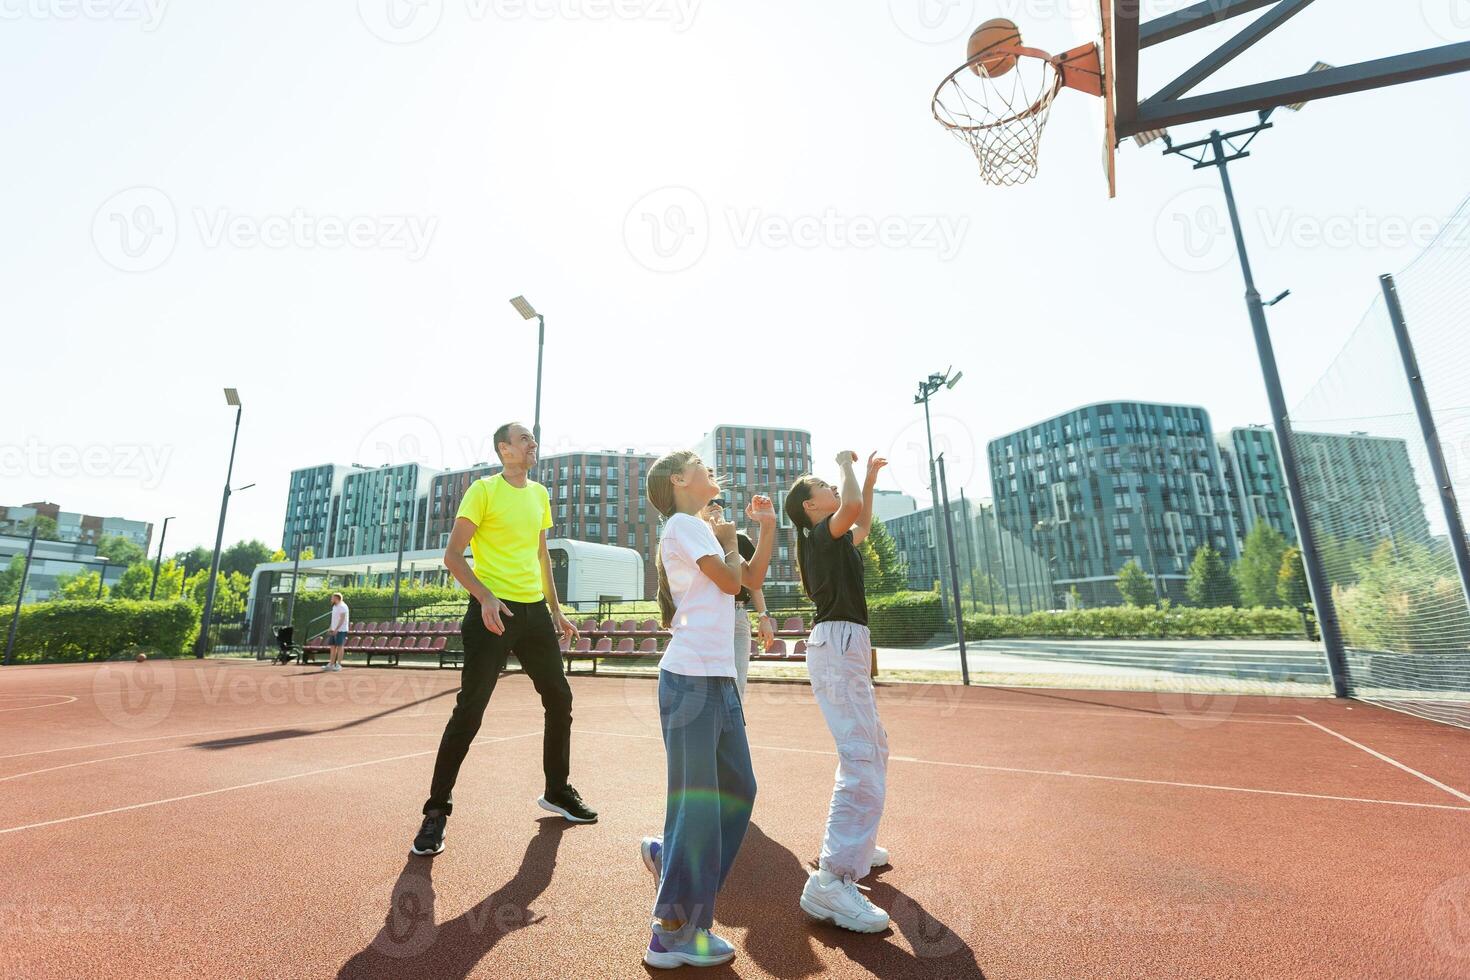 sommar högtider, sport och människor begrepp - Lycklig familj med boll spelar på basketboll lekplats foto